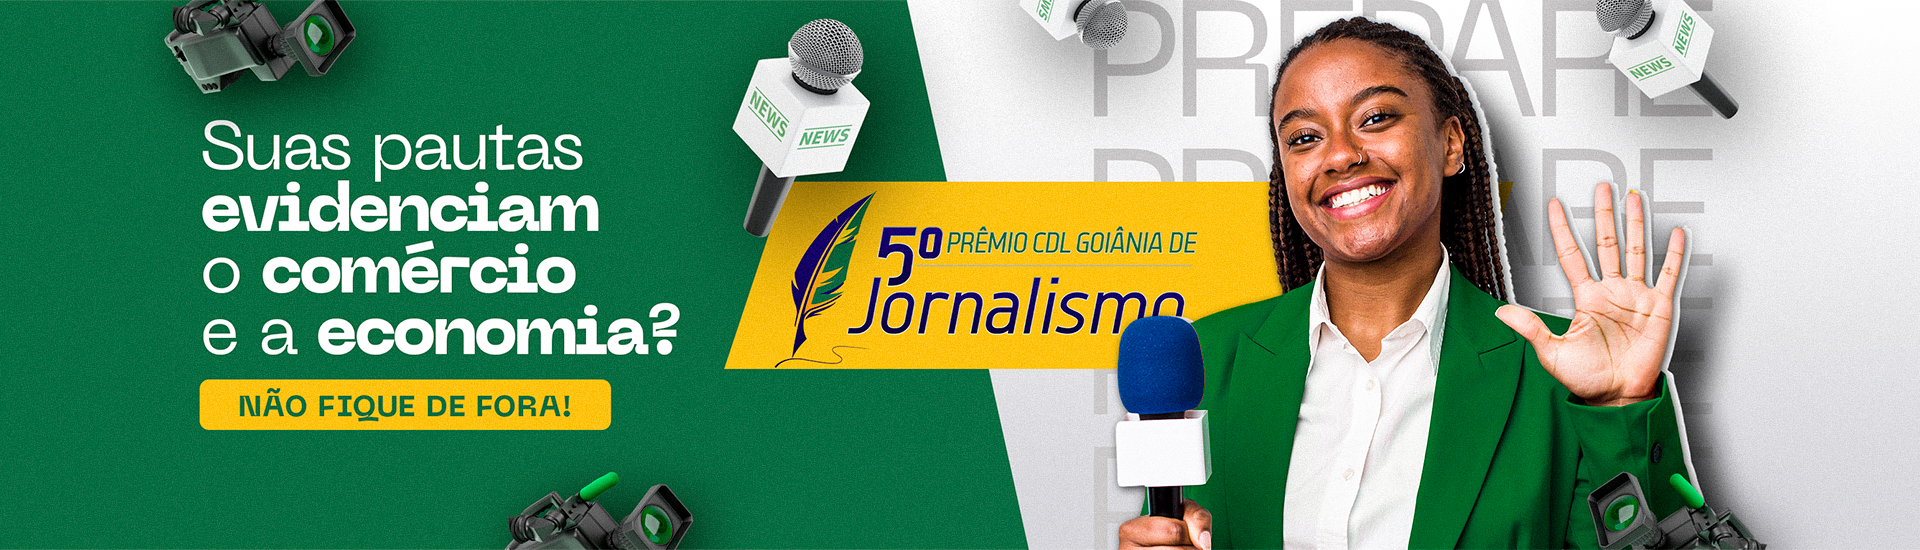 Banner Prêmio CDL Goiânia Jornalismo